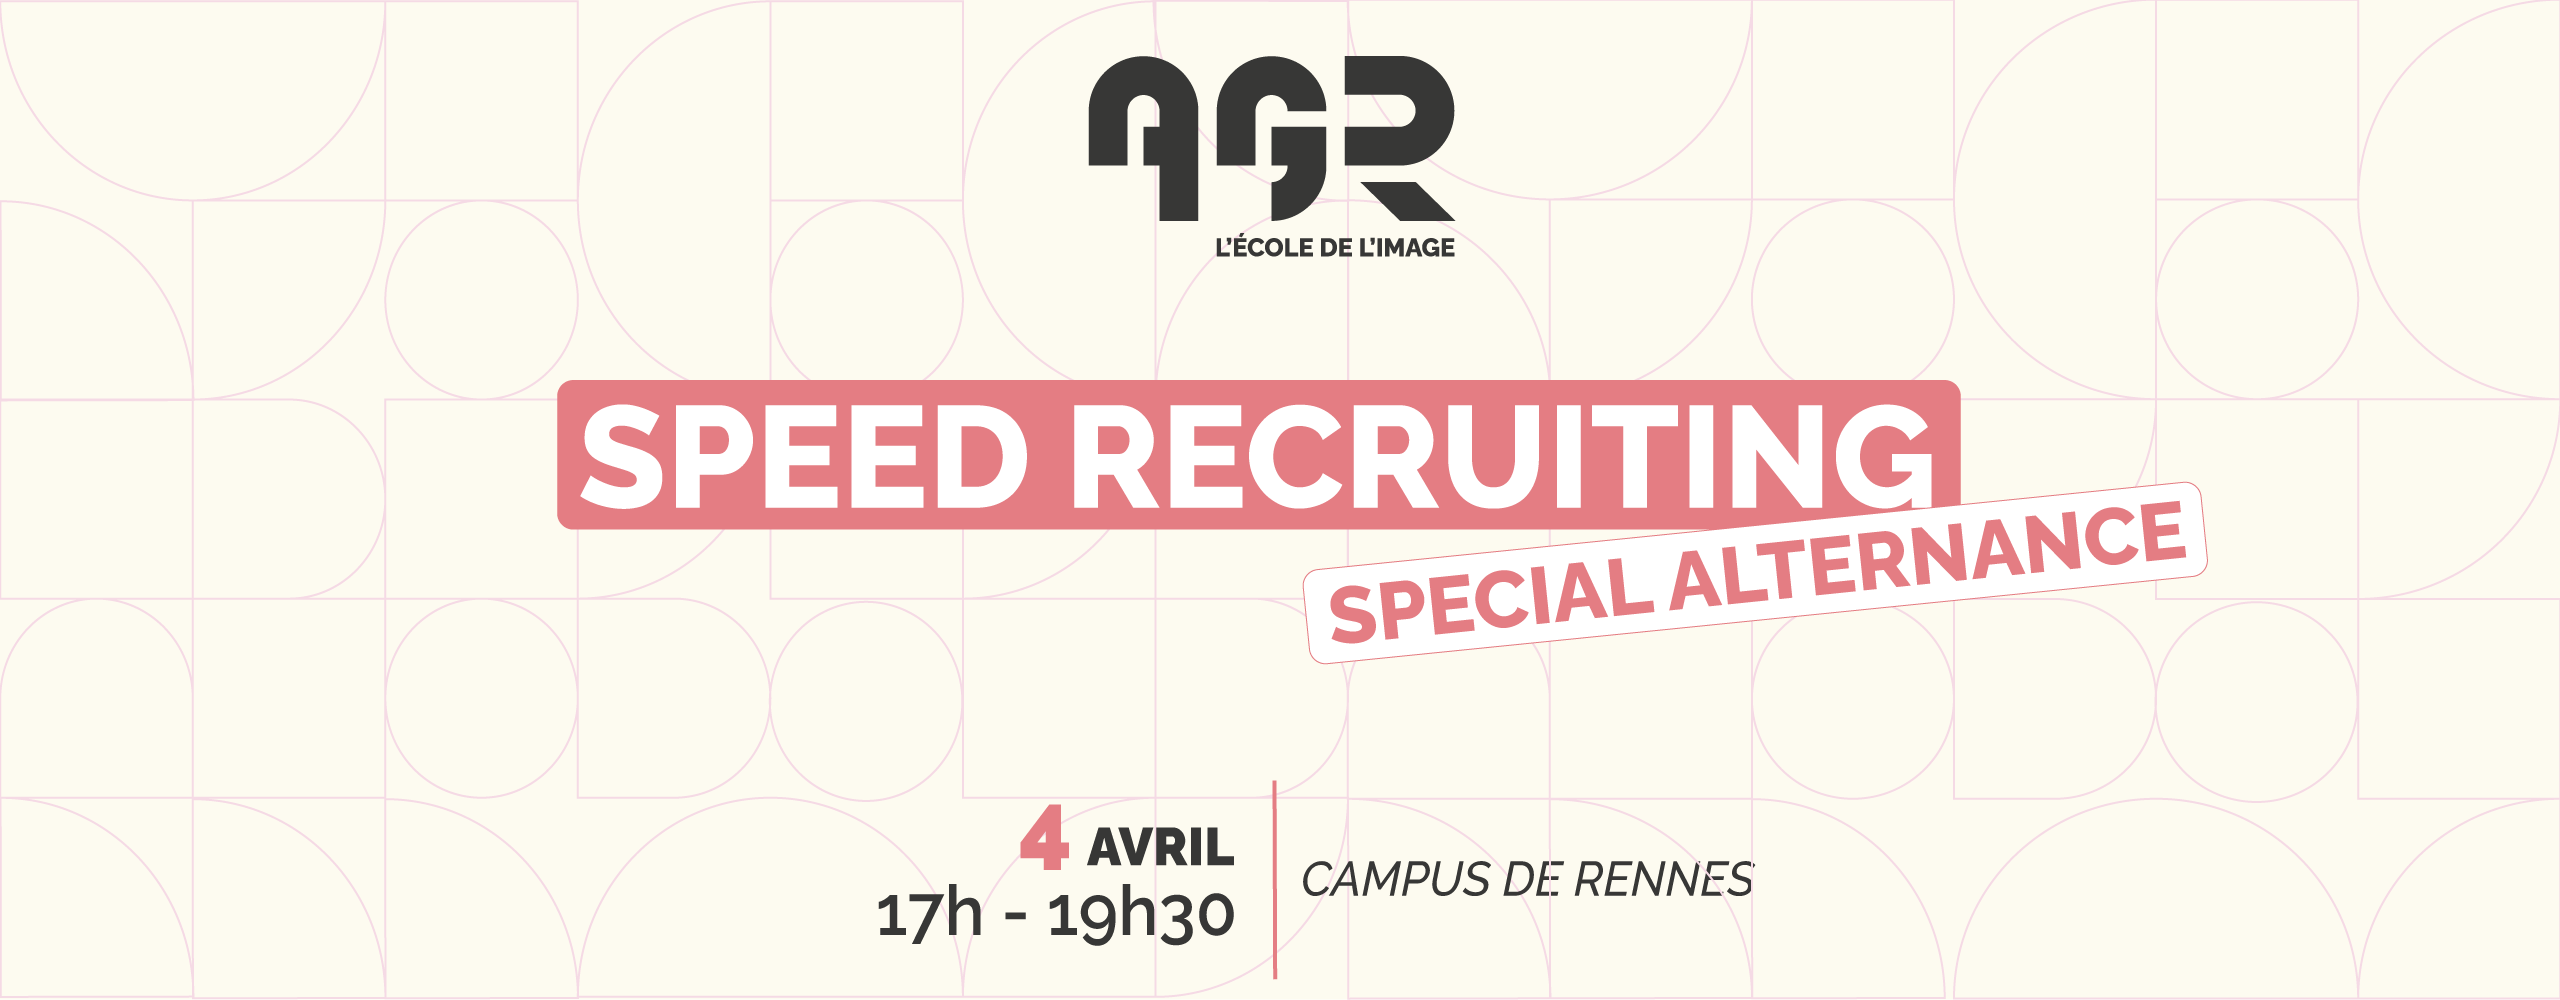 Speed recruiting Spécial Alternance - AGR, l"École de l'Image